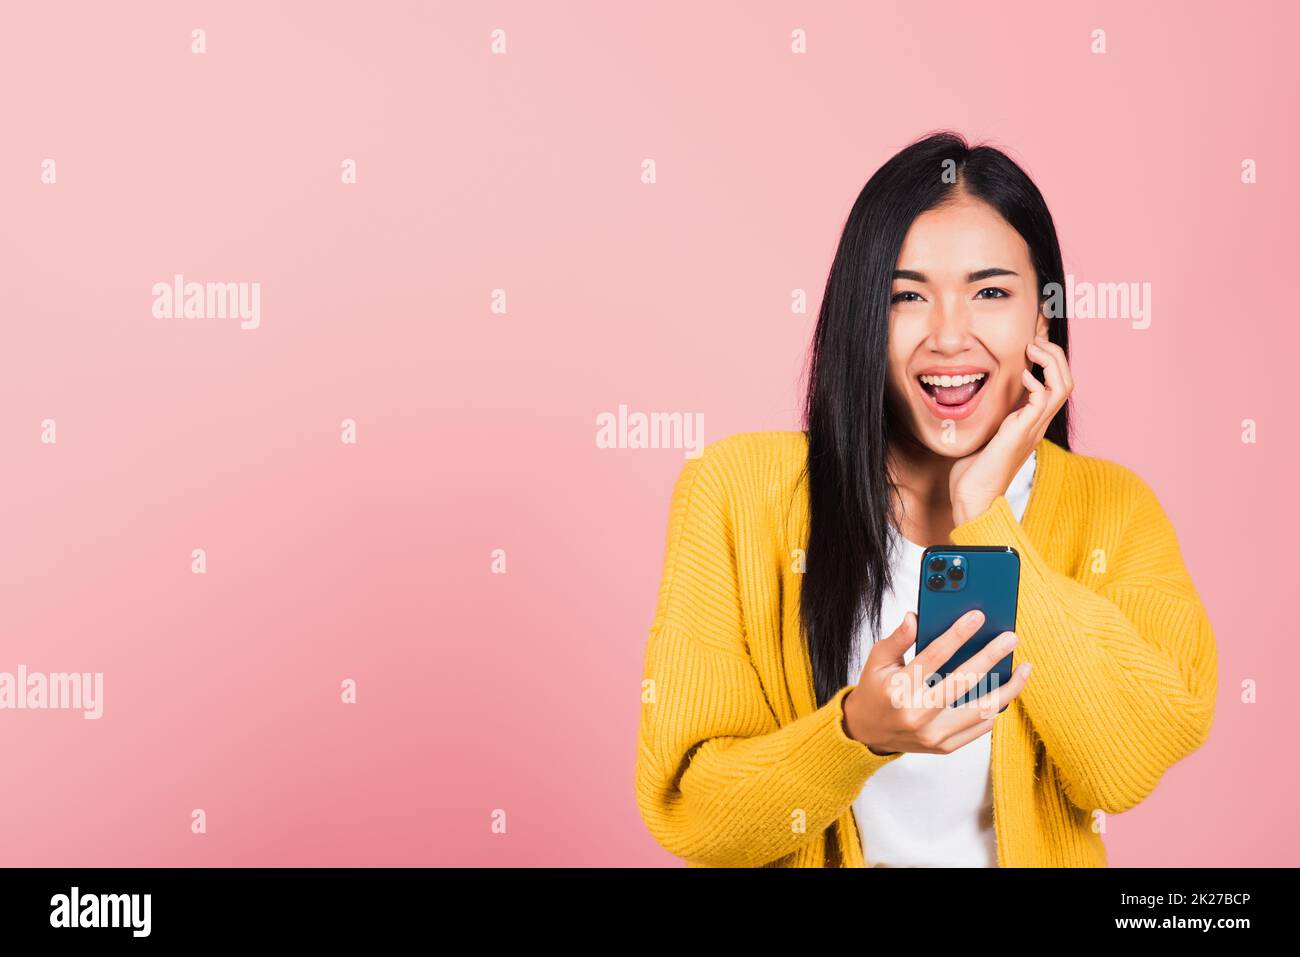 Joyeux portrait asiatique beau mignon jeune femme adolescent souriant excité en utilisant le studio de téléphone mobile intelligent tourné isolé sur fond rose, la femme thaïlandaise surprise de faire le geste gagnant sur le smartphone Banque D'Images